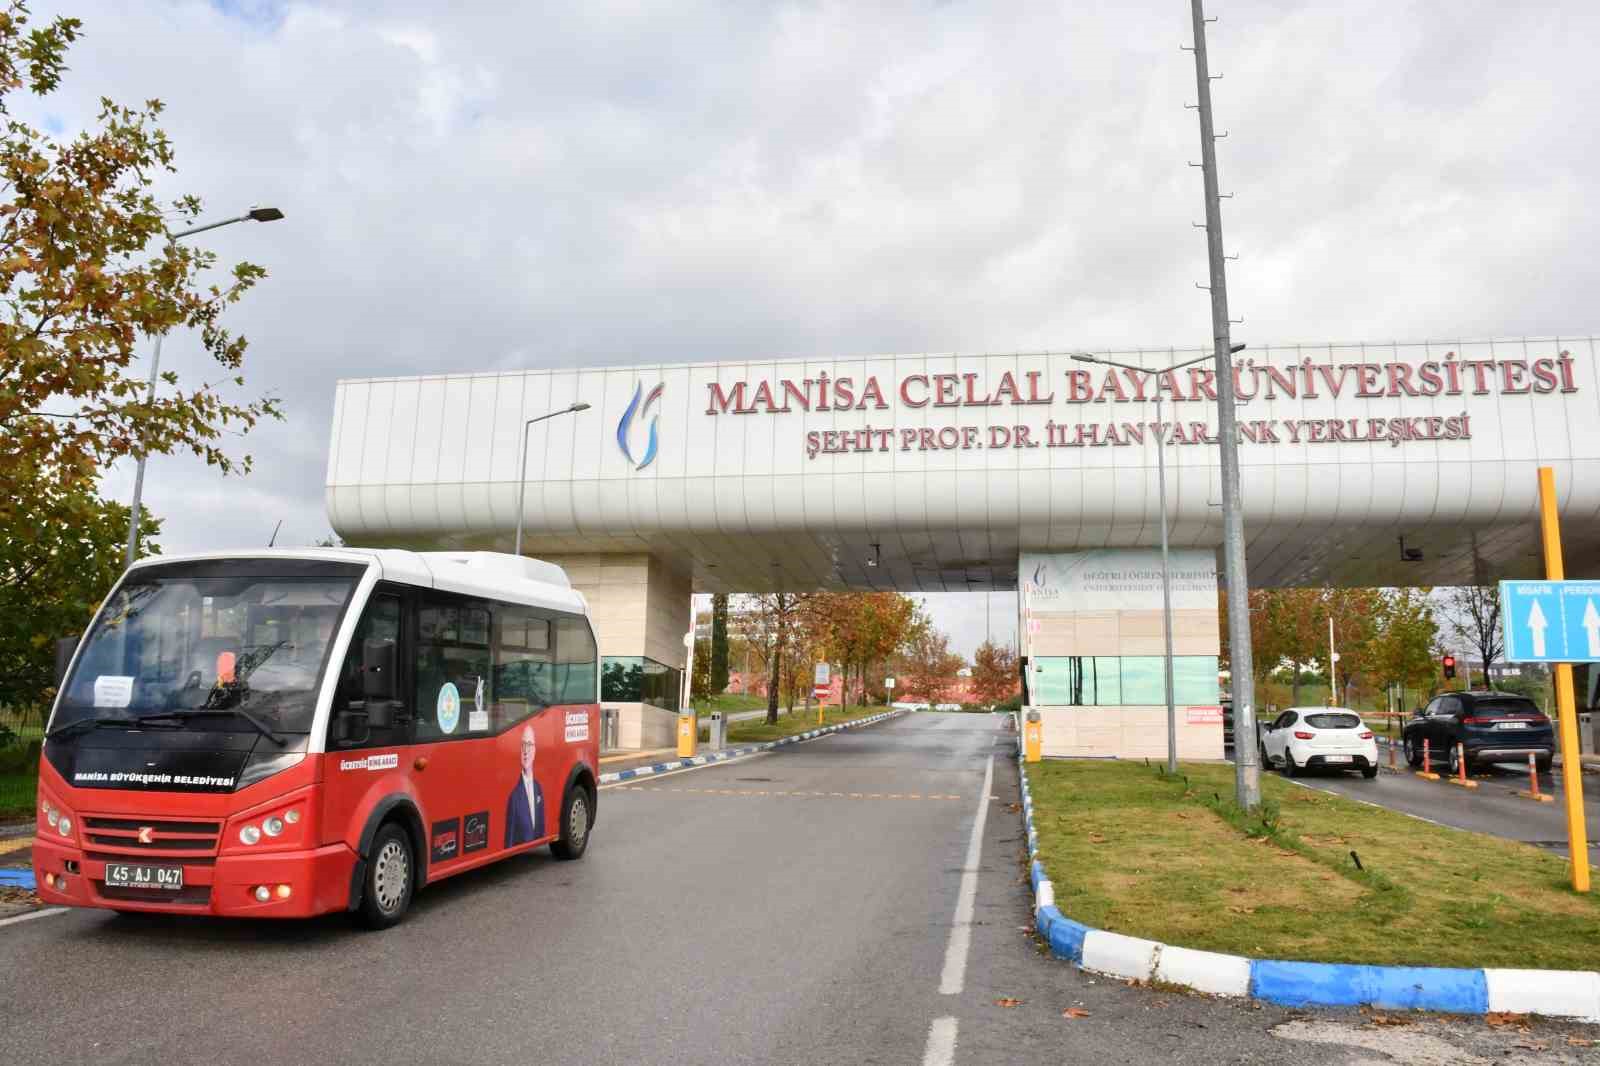 Manisa Büyükşehir Belediyesinden kampüs içine ücretsiz ulaşım